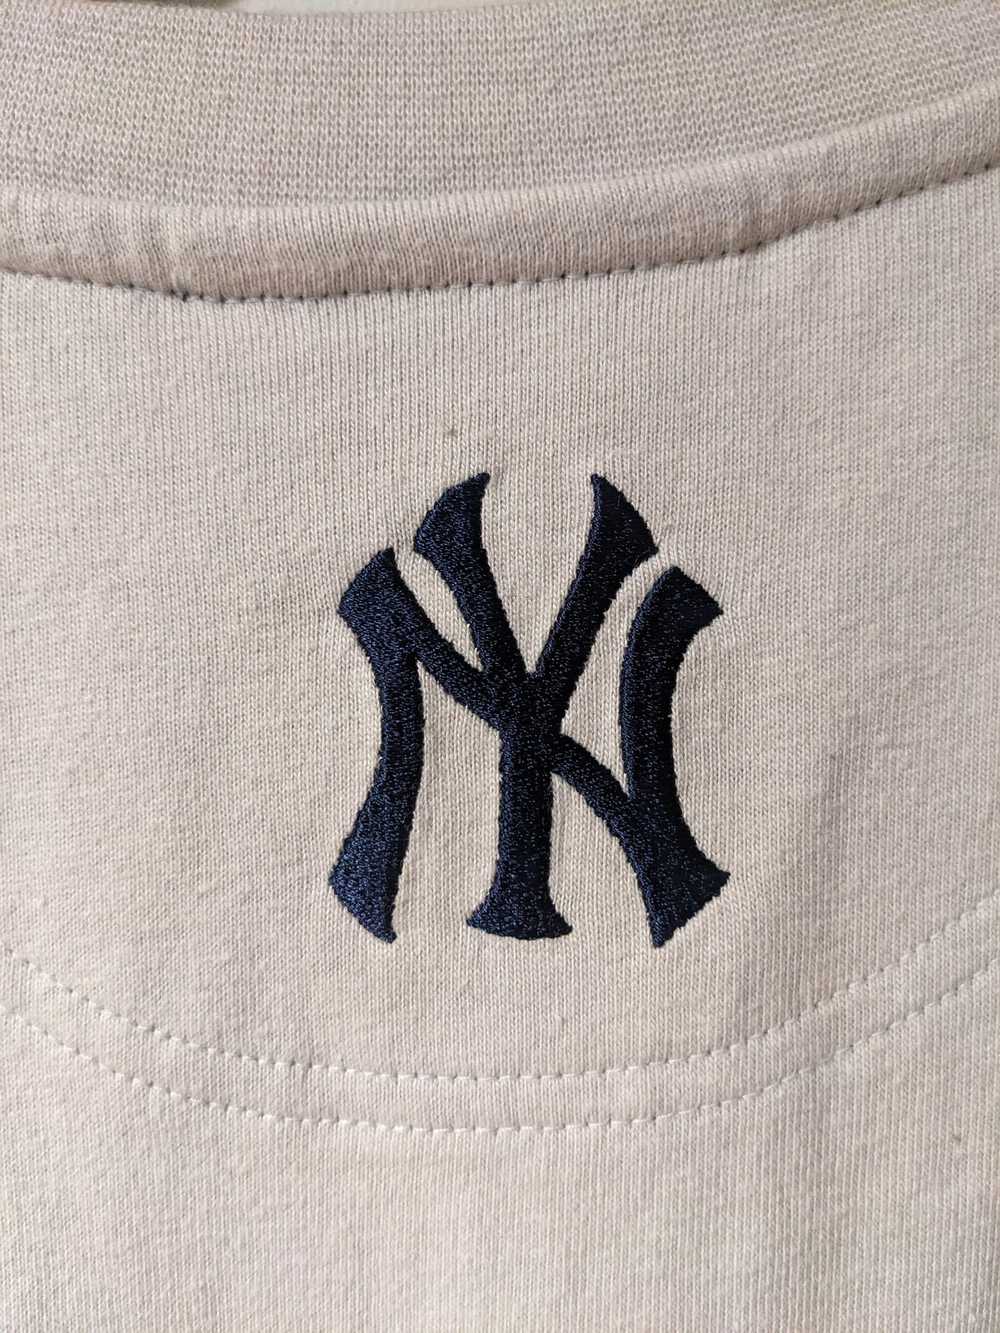 New York Yankees × Nike × Vintage Vintage New Yor… - image 8